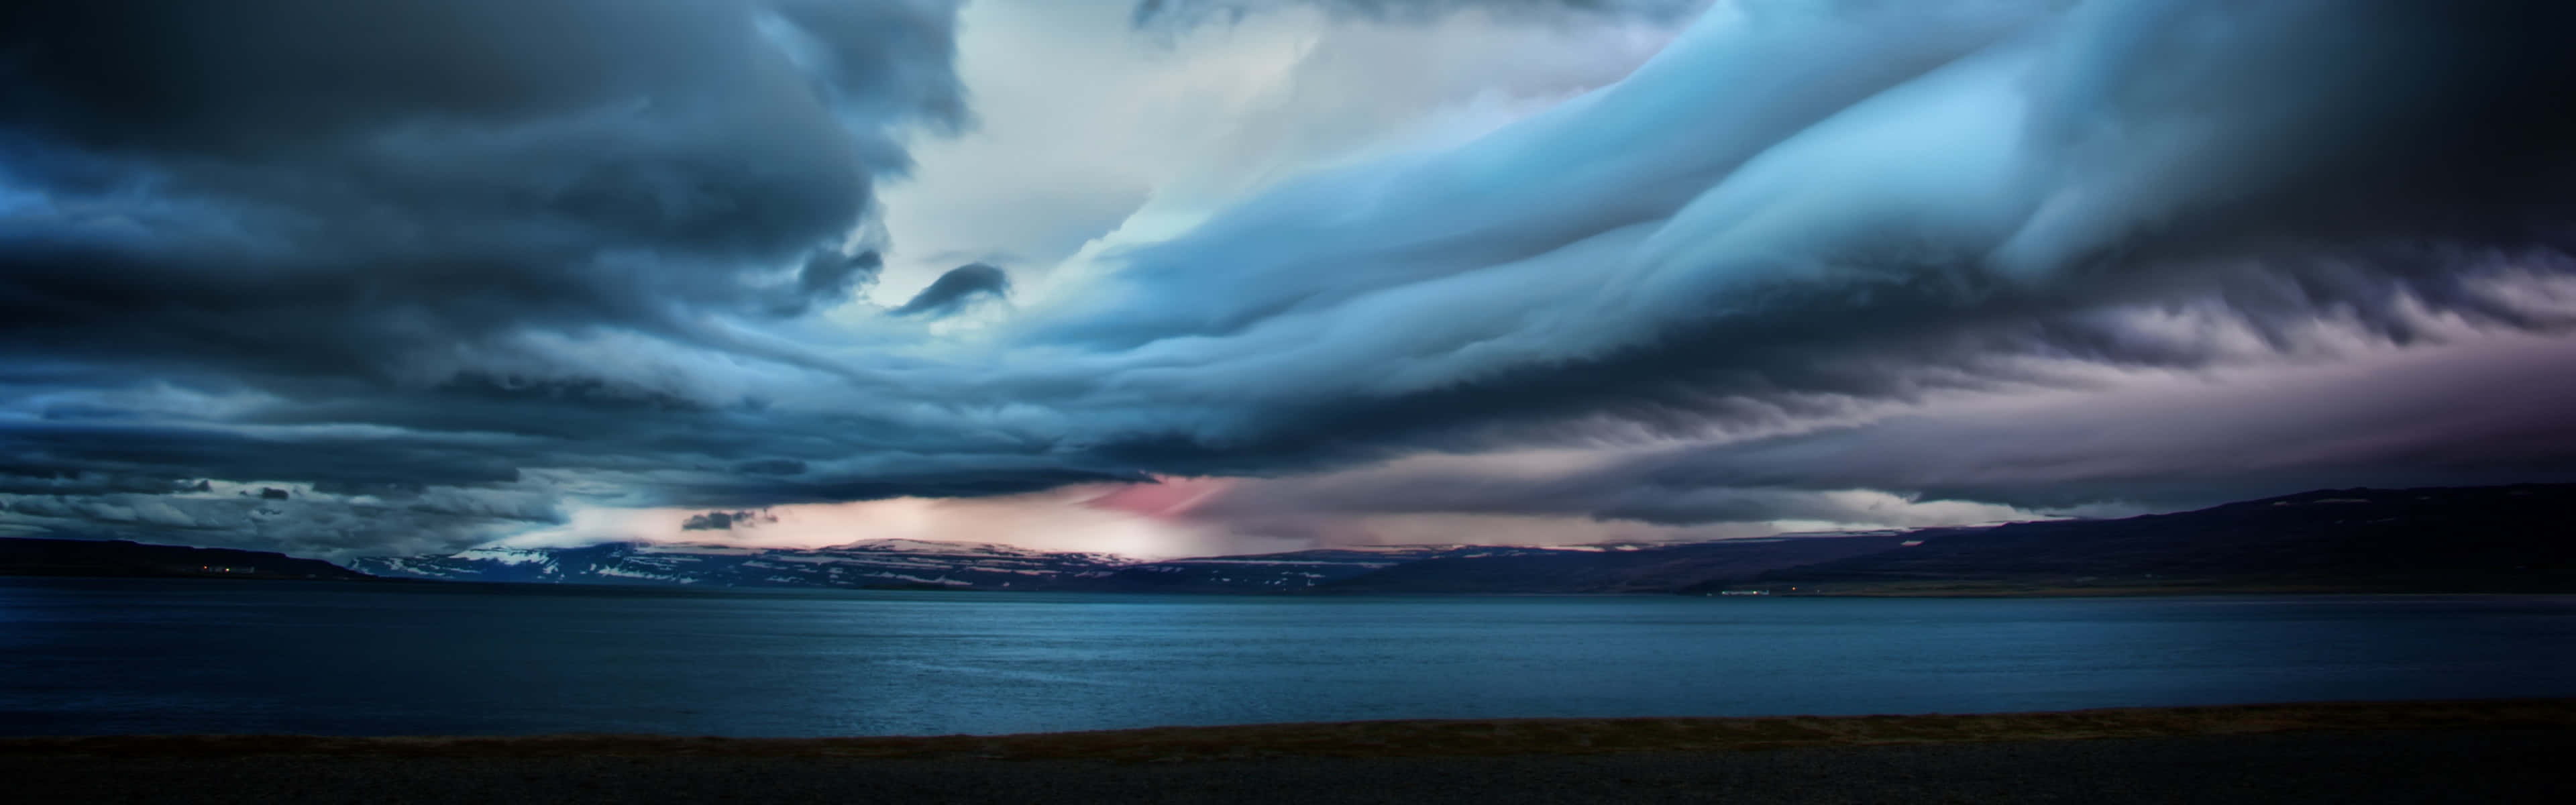 En stormfuld himmel over et sø og bjerge Wallpaper